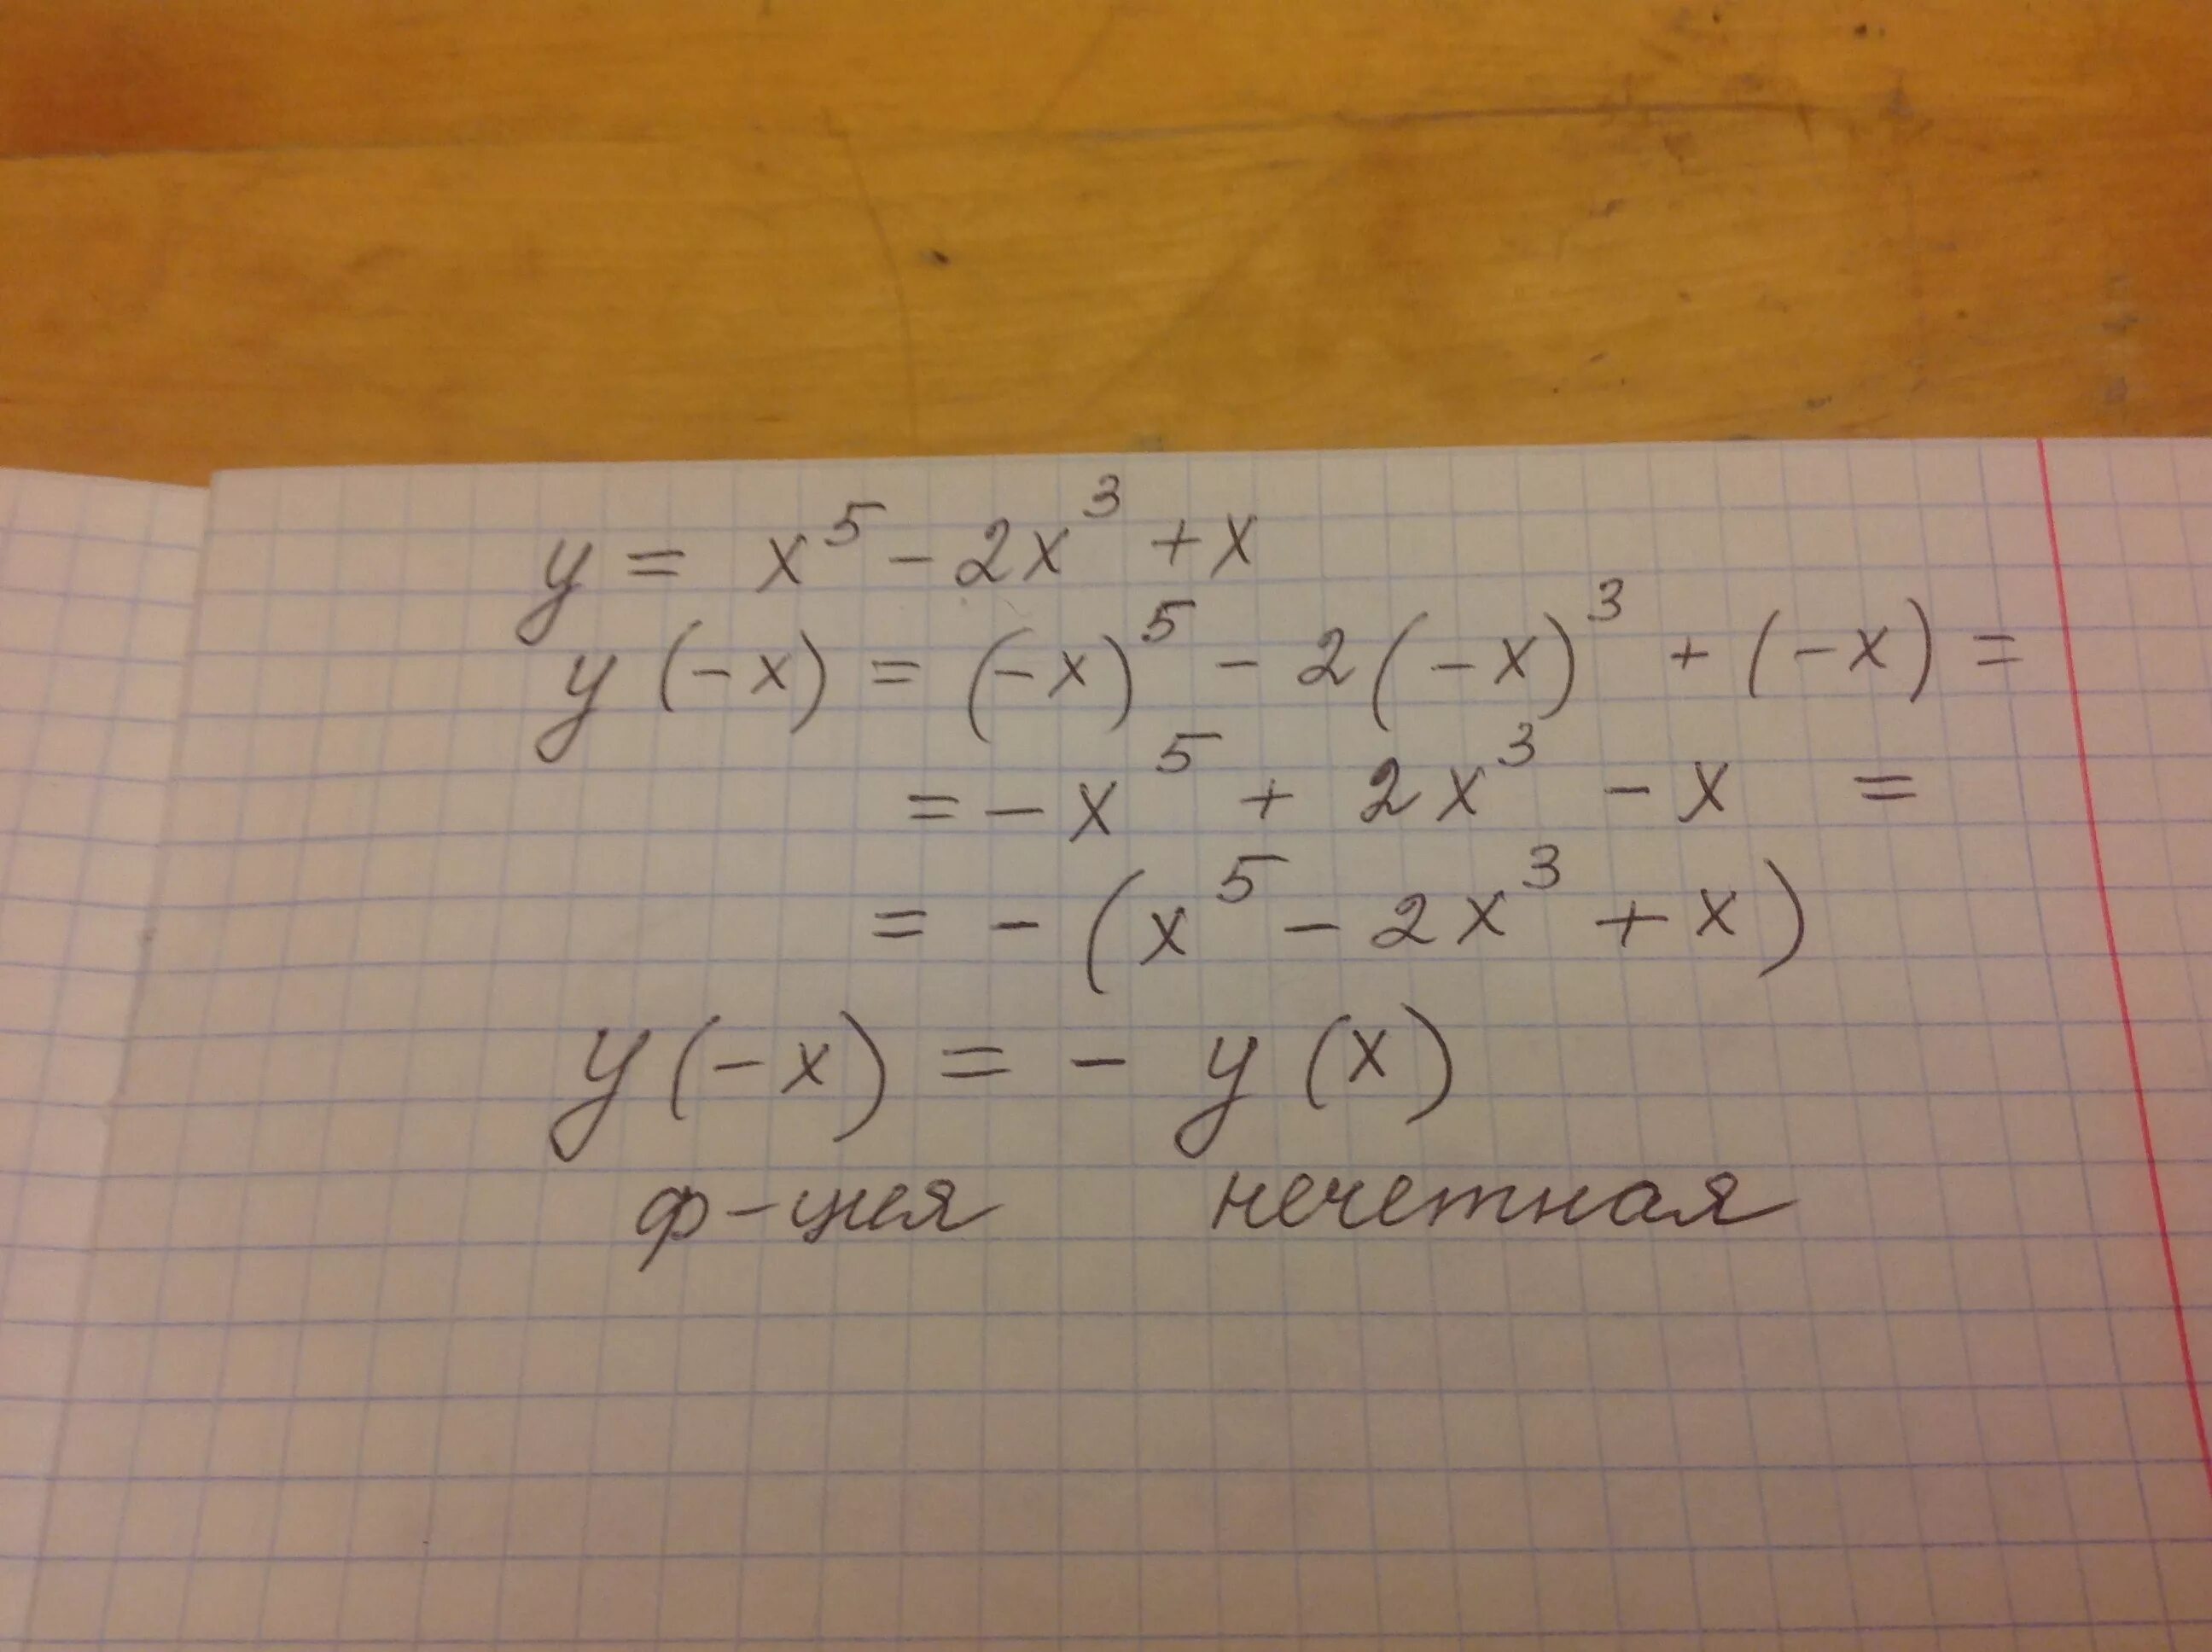 Исследовать функцию на чётность y 5x 2-3x. Исследуйте функцию y x5-2x3+x на четность. Исследовать на чётность функцию x2(2x-x3). Исследуйте на четность функцию y x4-2x2+3.